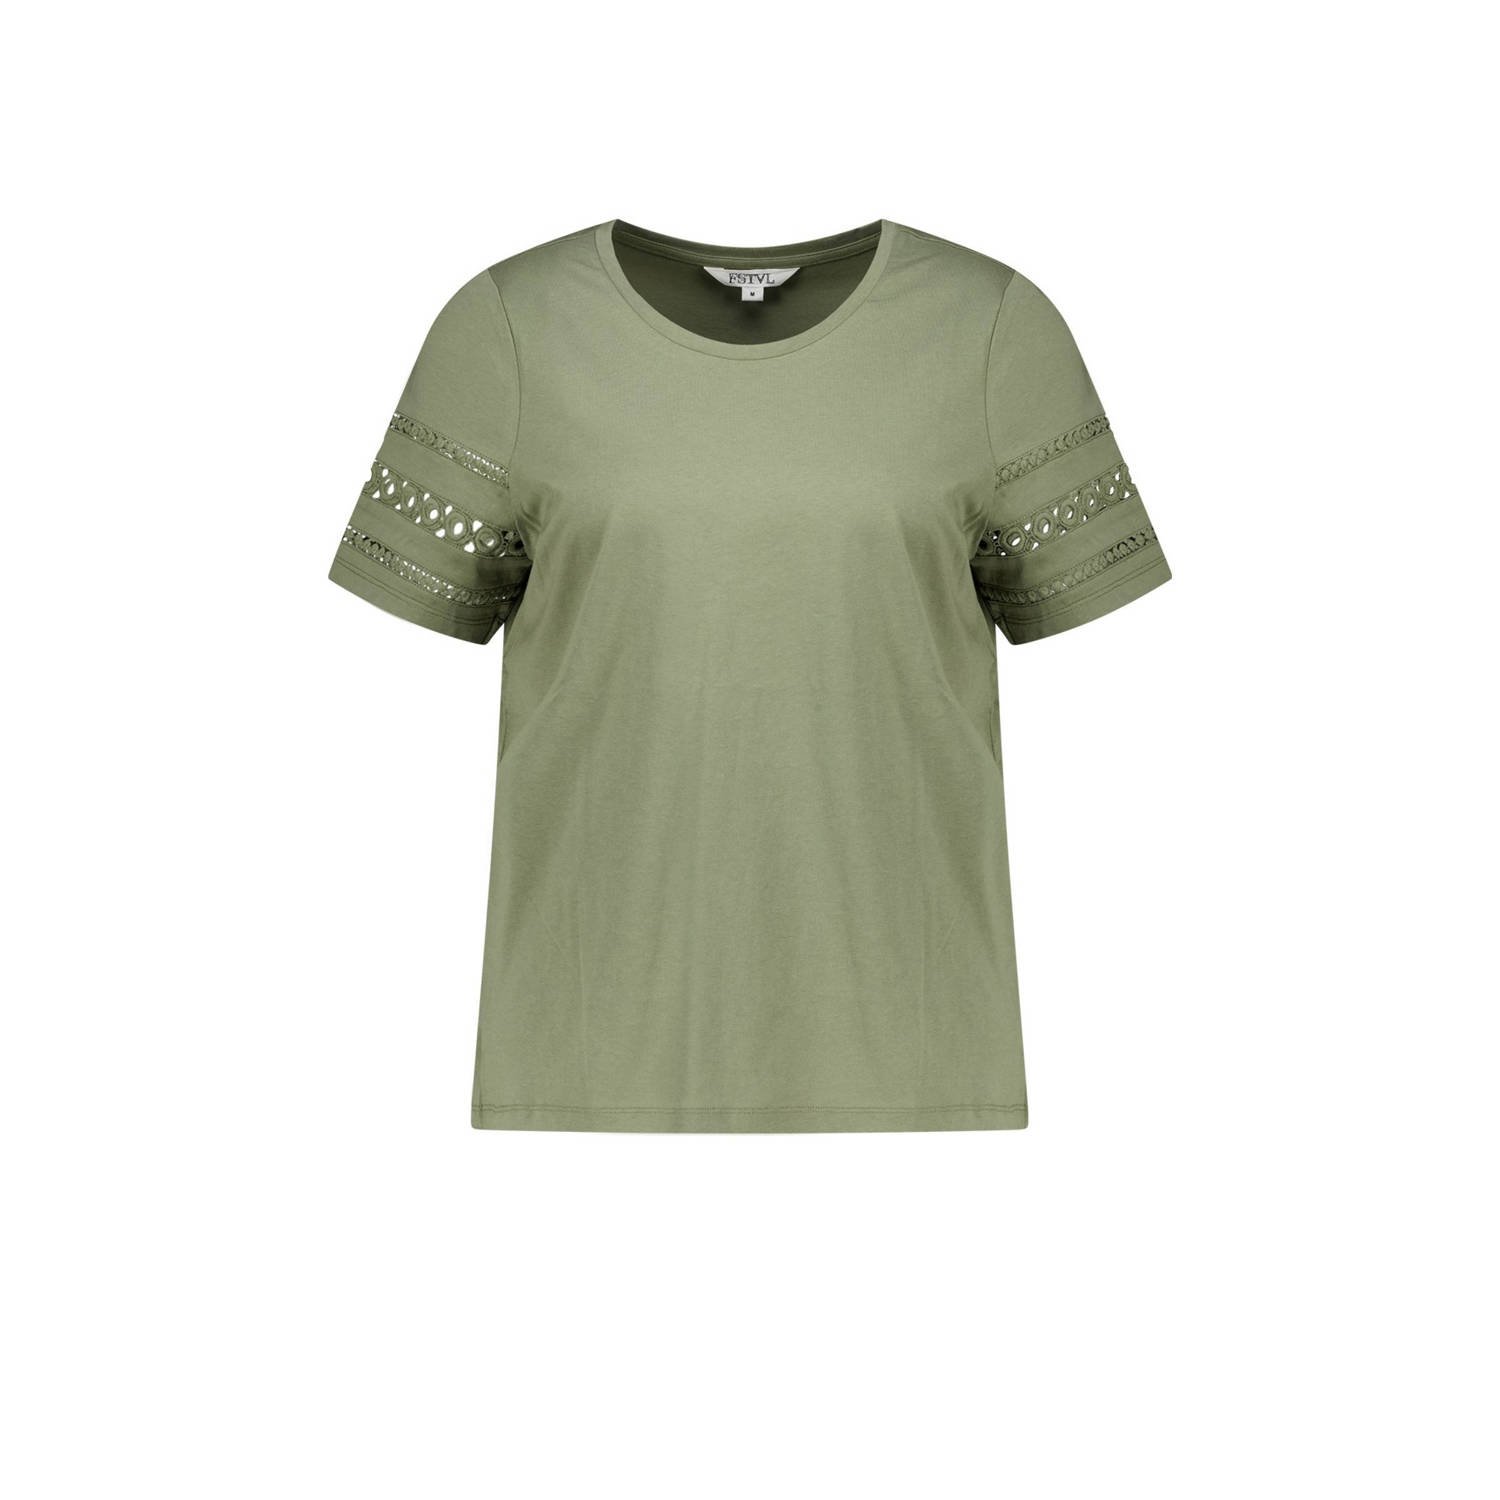 MS Mode T-shirt groen